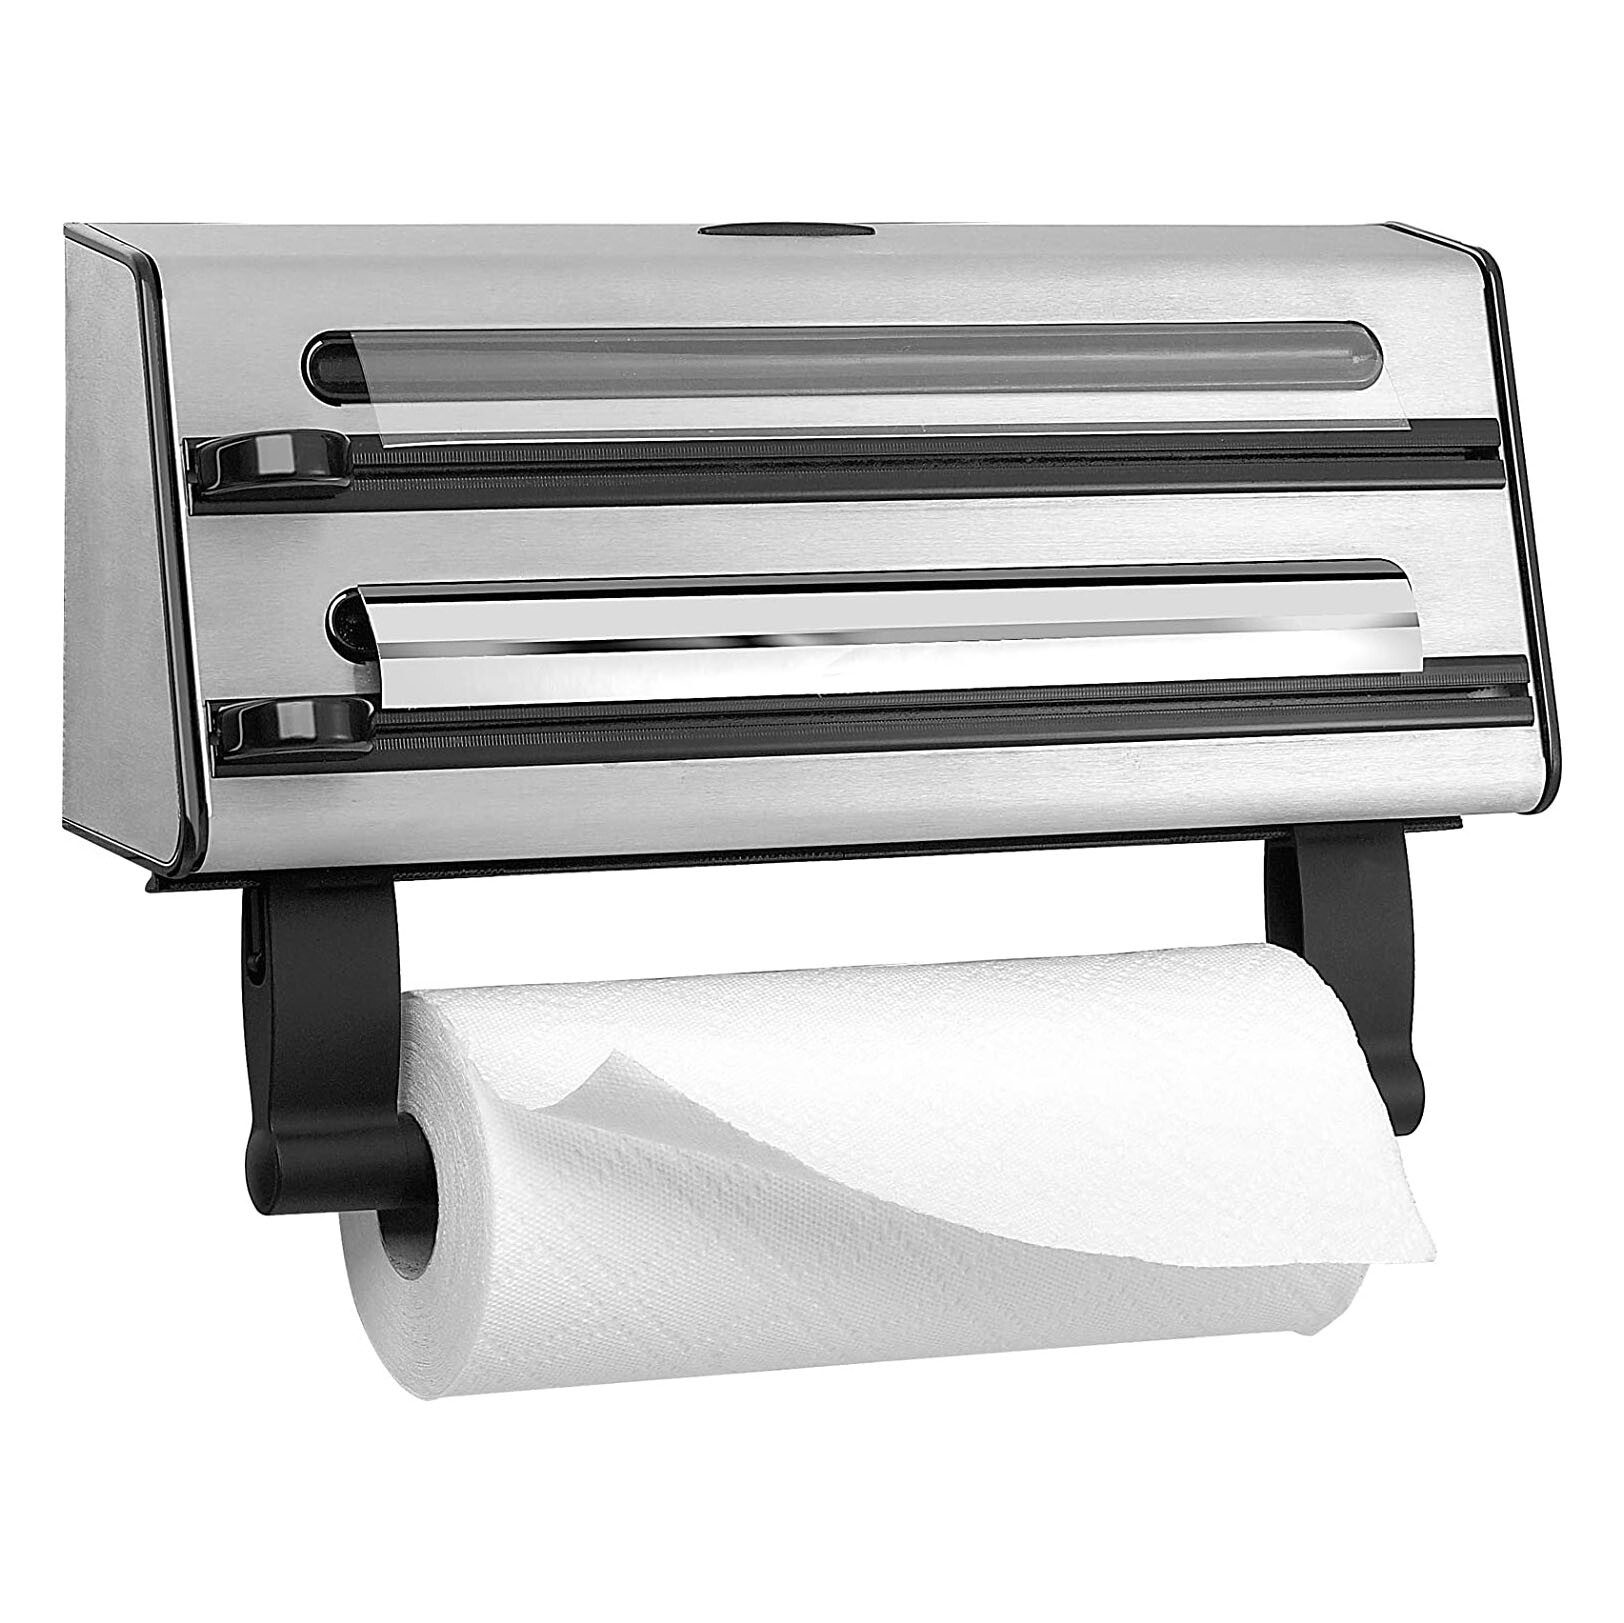 Dụng cụ cắt giấy nhà bếp Emsa 504180 Contura